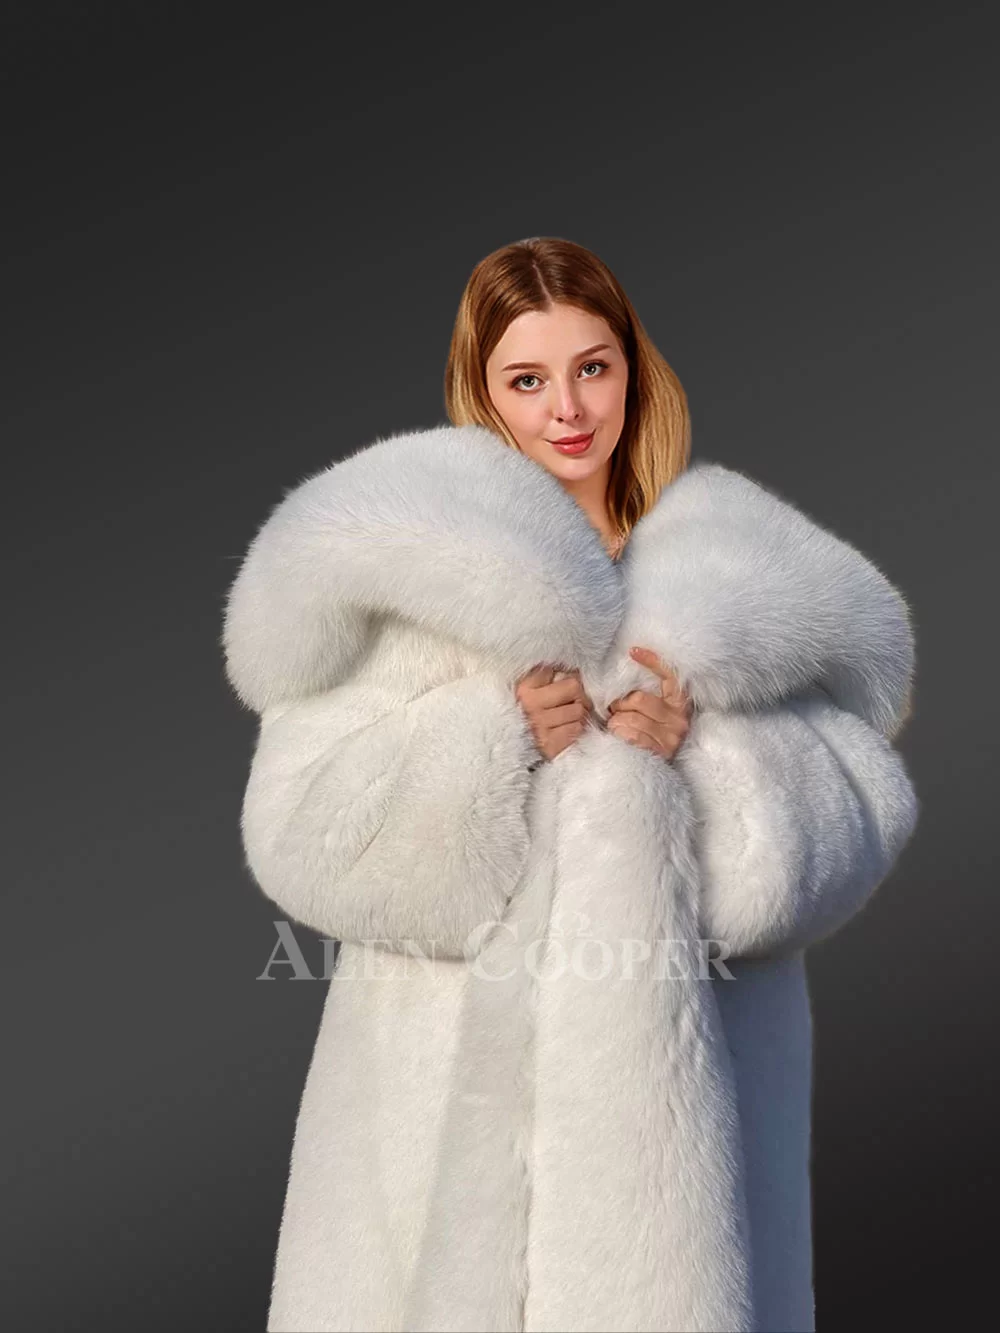 https://www.alencooper.com/wp-content/uploads/2022/07/Luxury-White-Fox-Fur-Full-Coat-for-Womens.jpg.webp